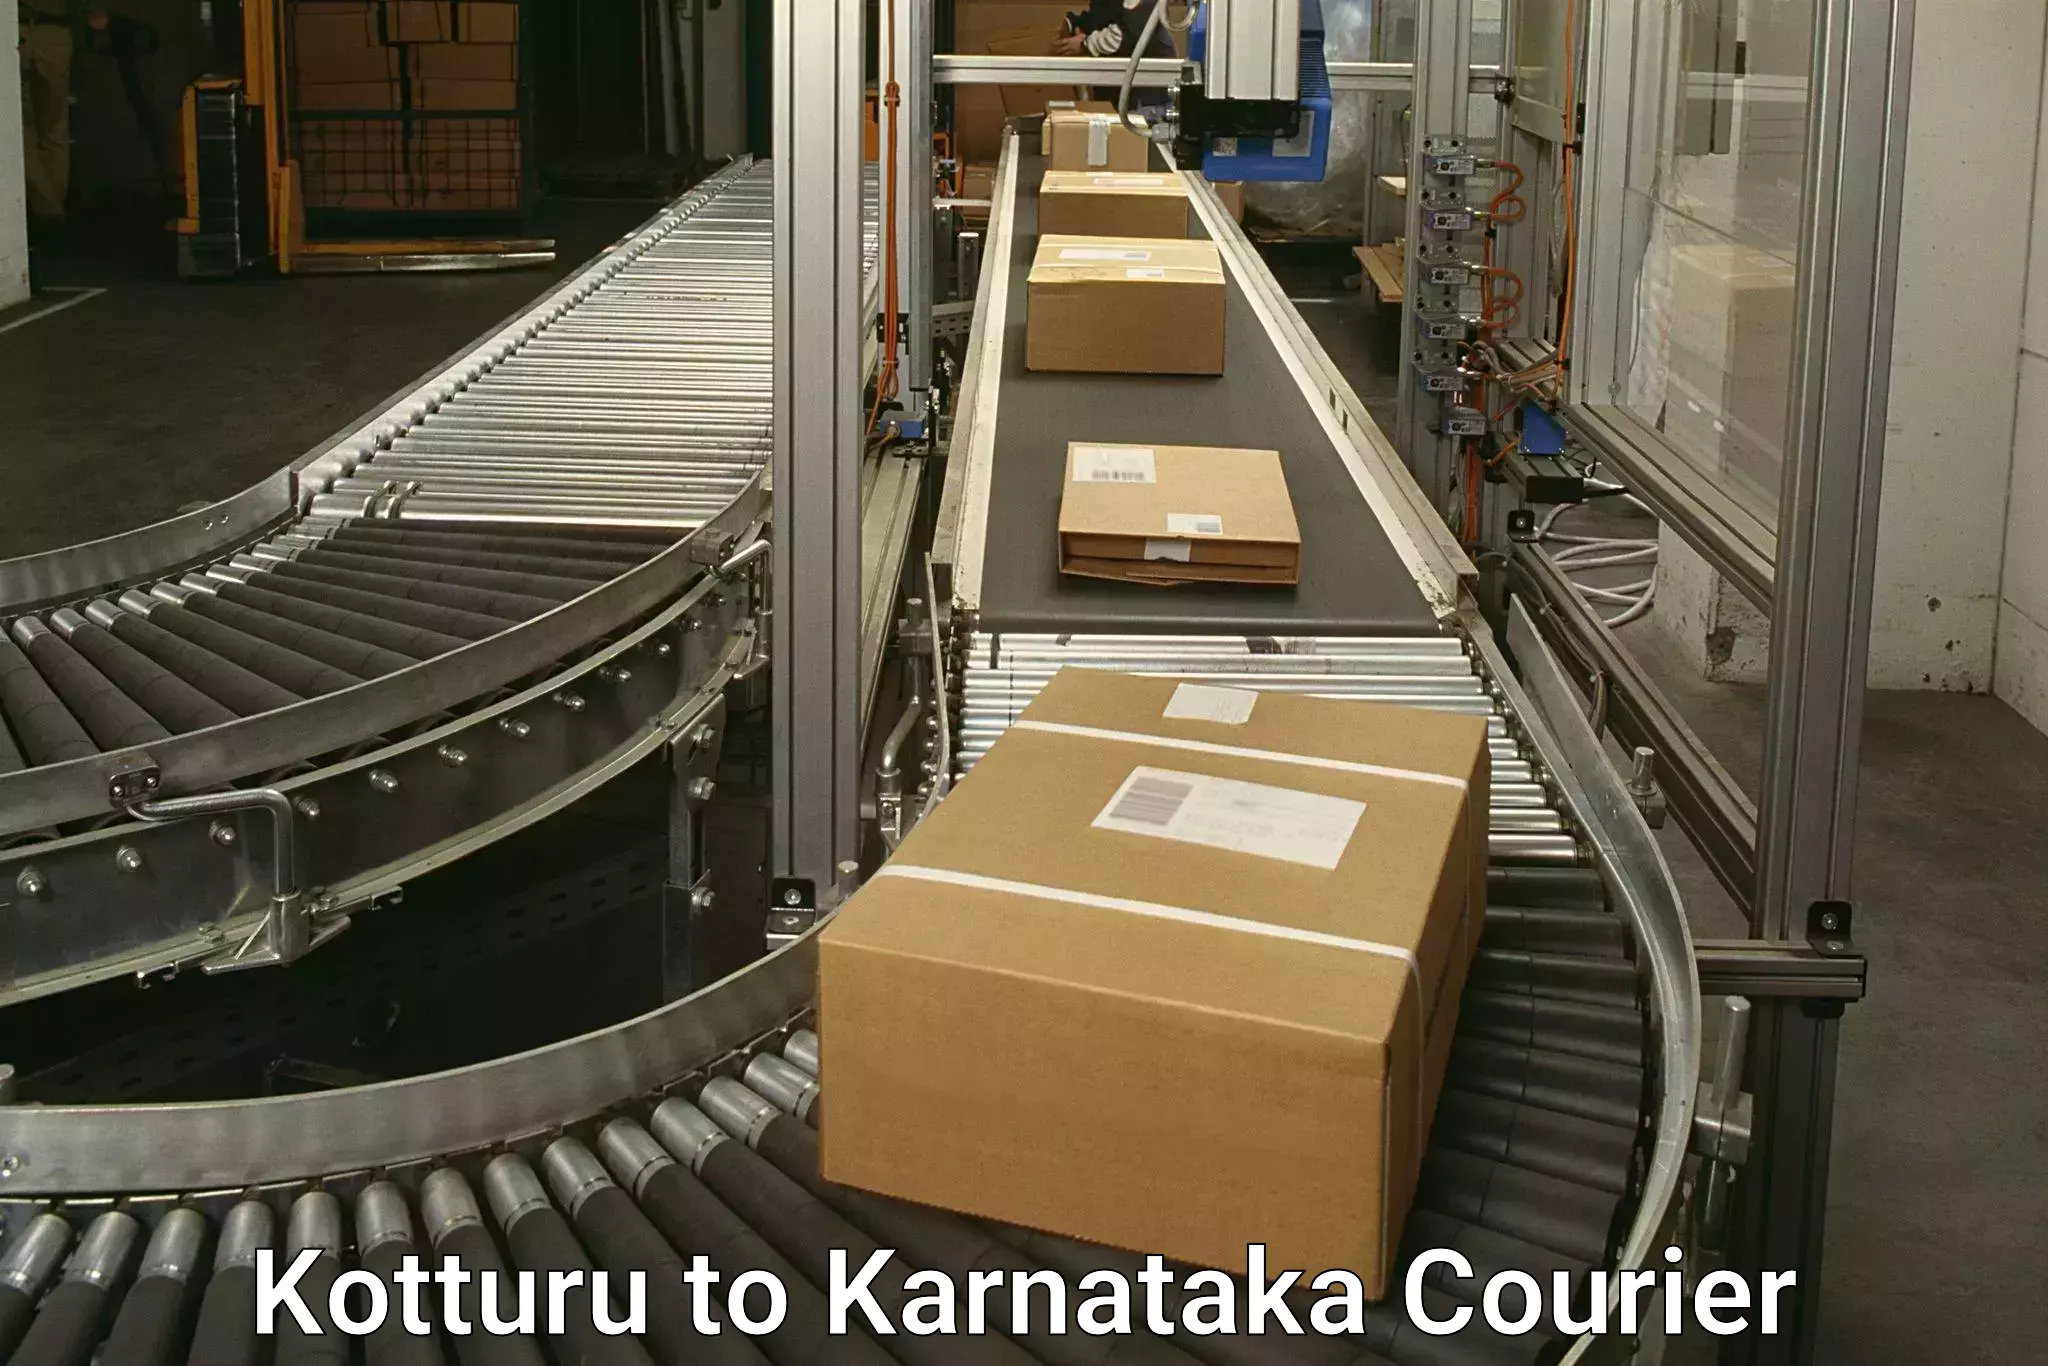 Nationwide courier service Kotturu to Anavatti